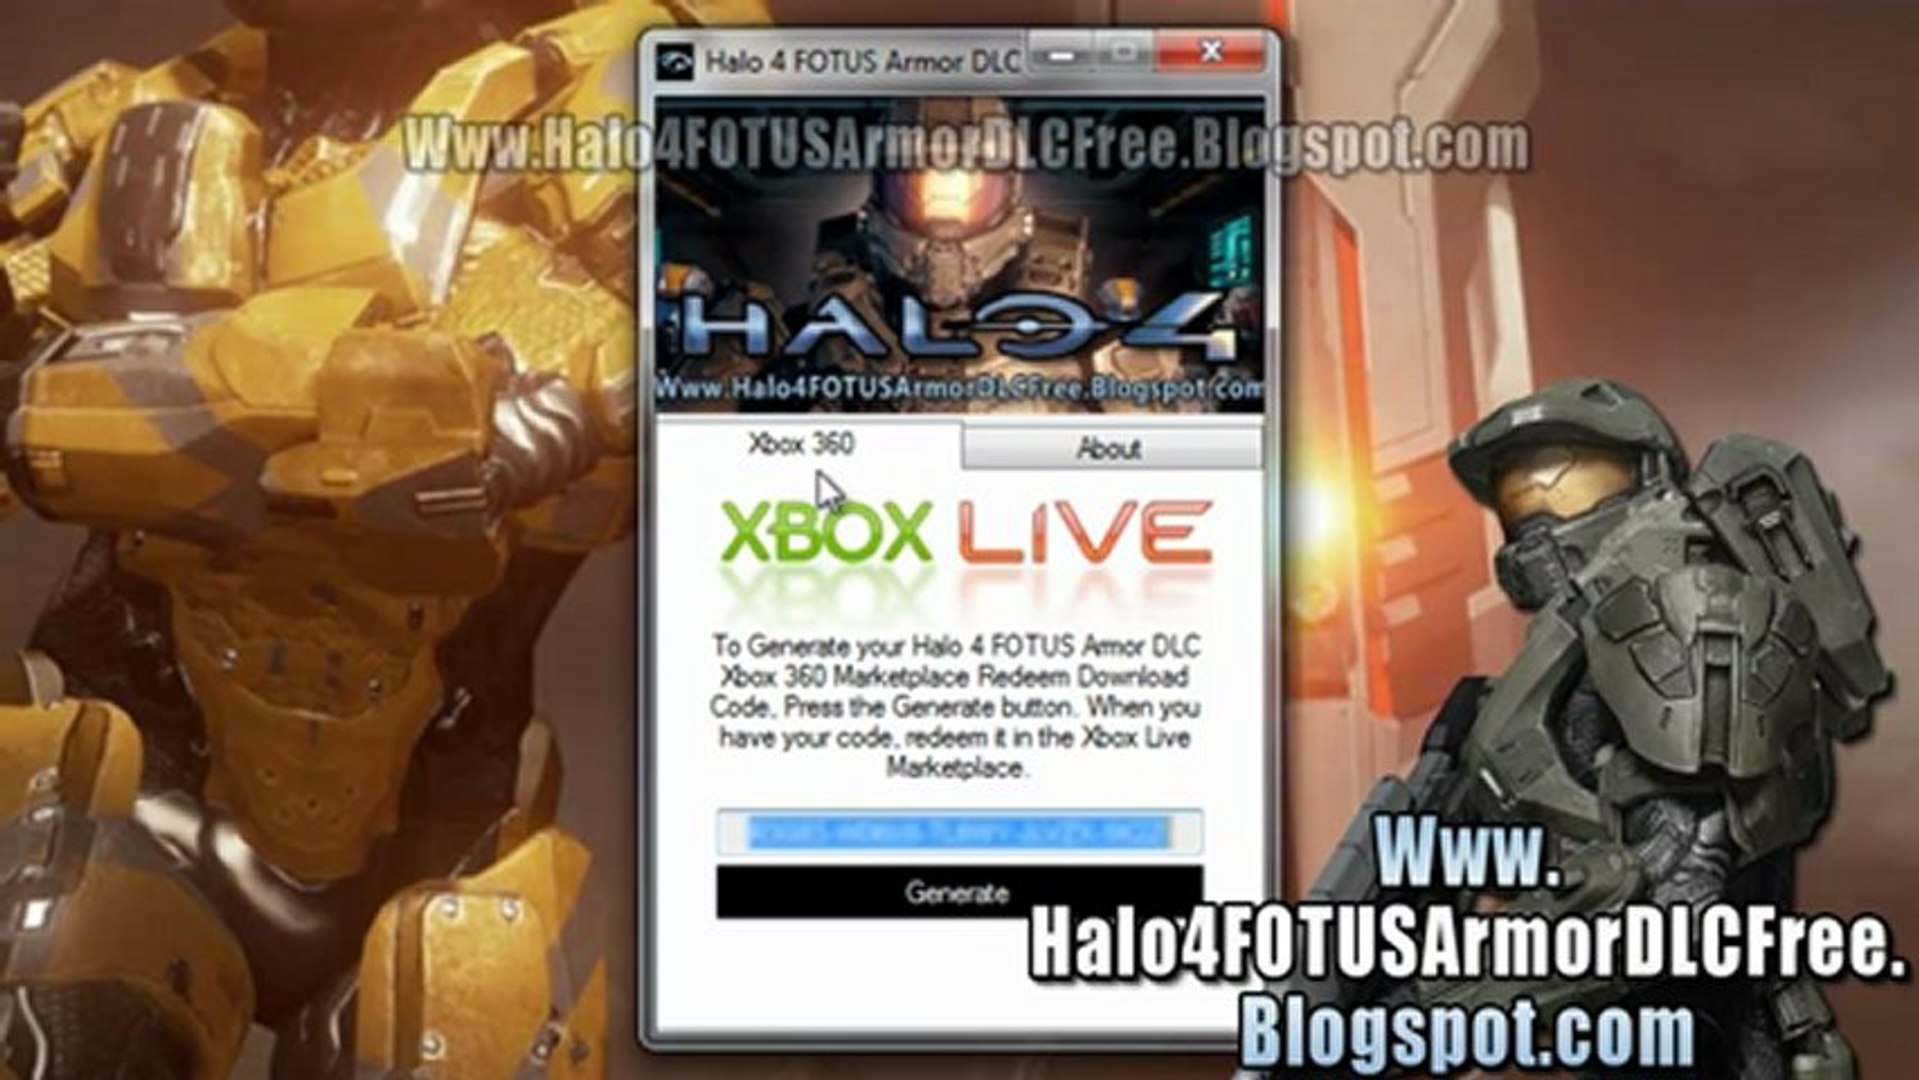 Halo 4 FOTUS Armor DLC Free Xbox 360 - video Dailymotion